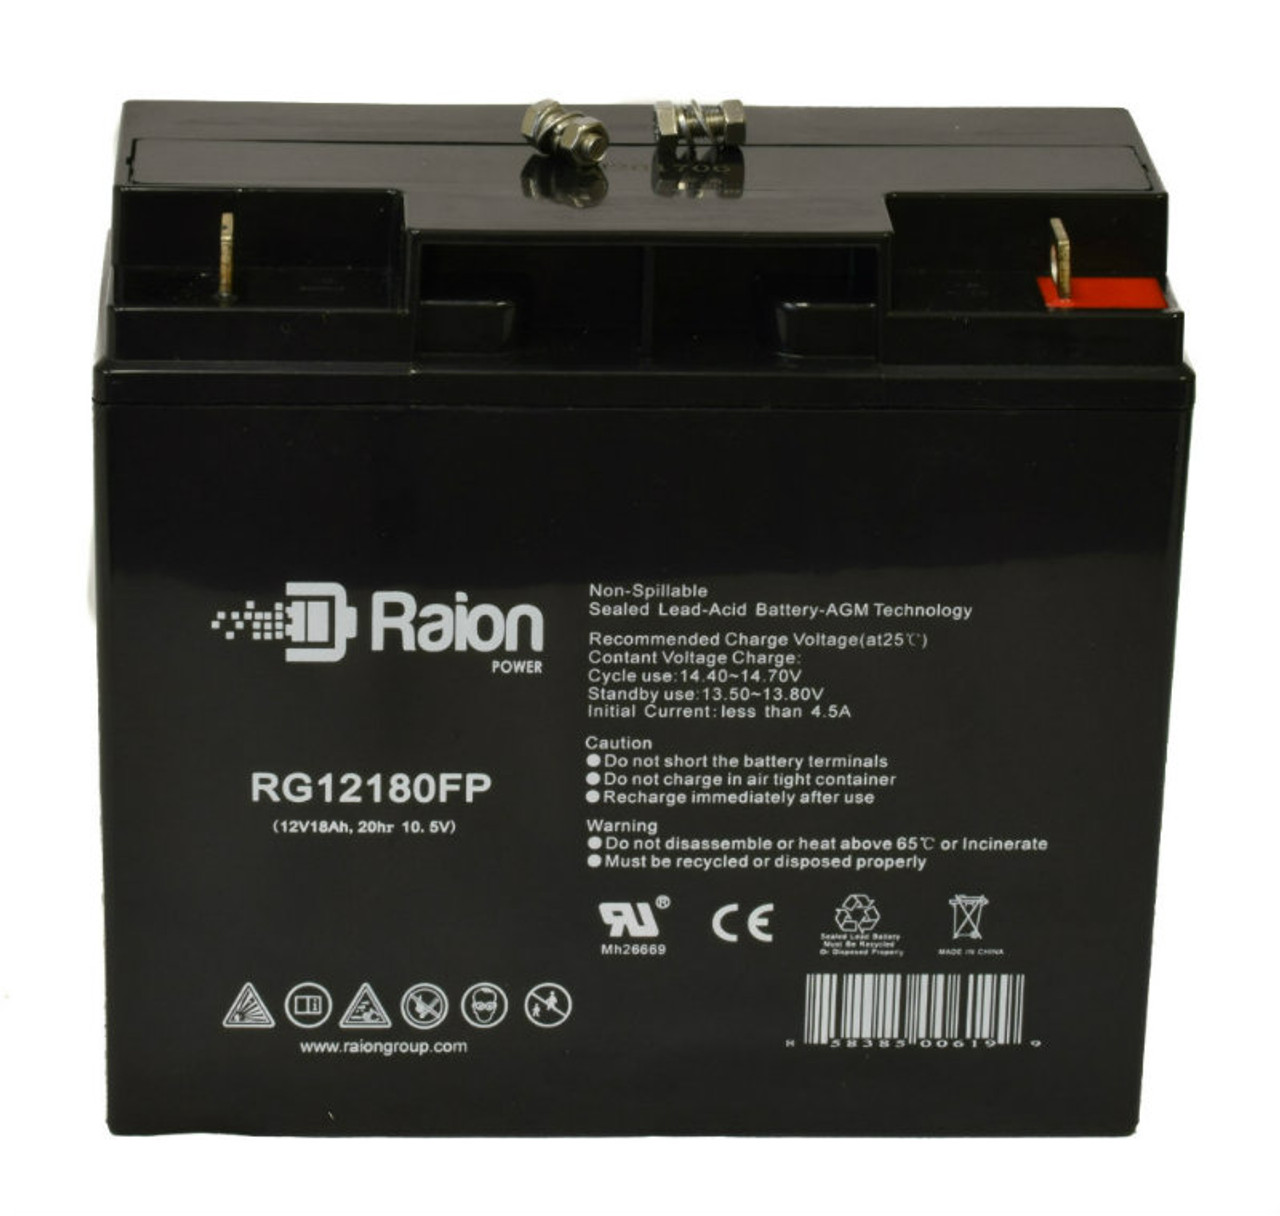 Raion Power RG12180FP 12V 18Ah Lead Acid Battery for Consent GS1218